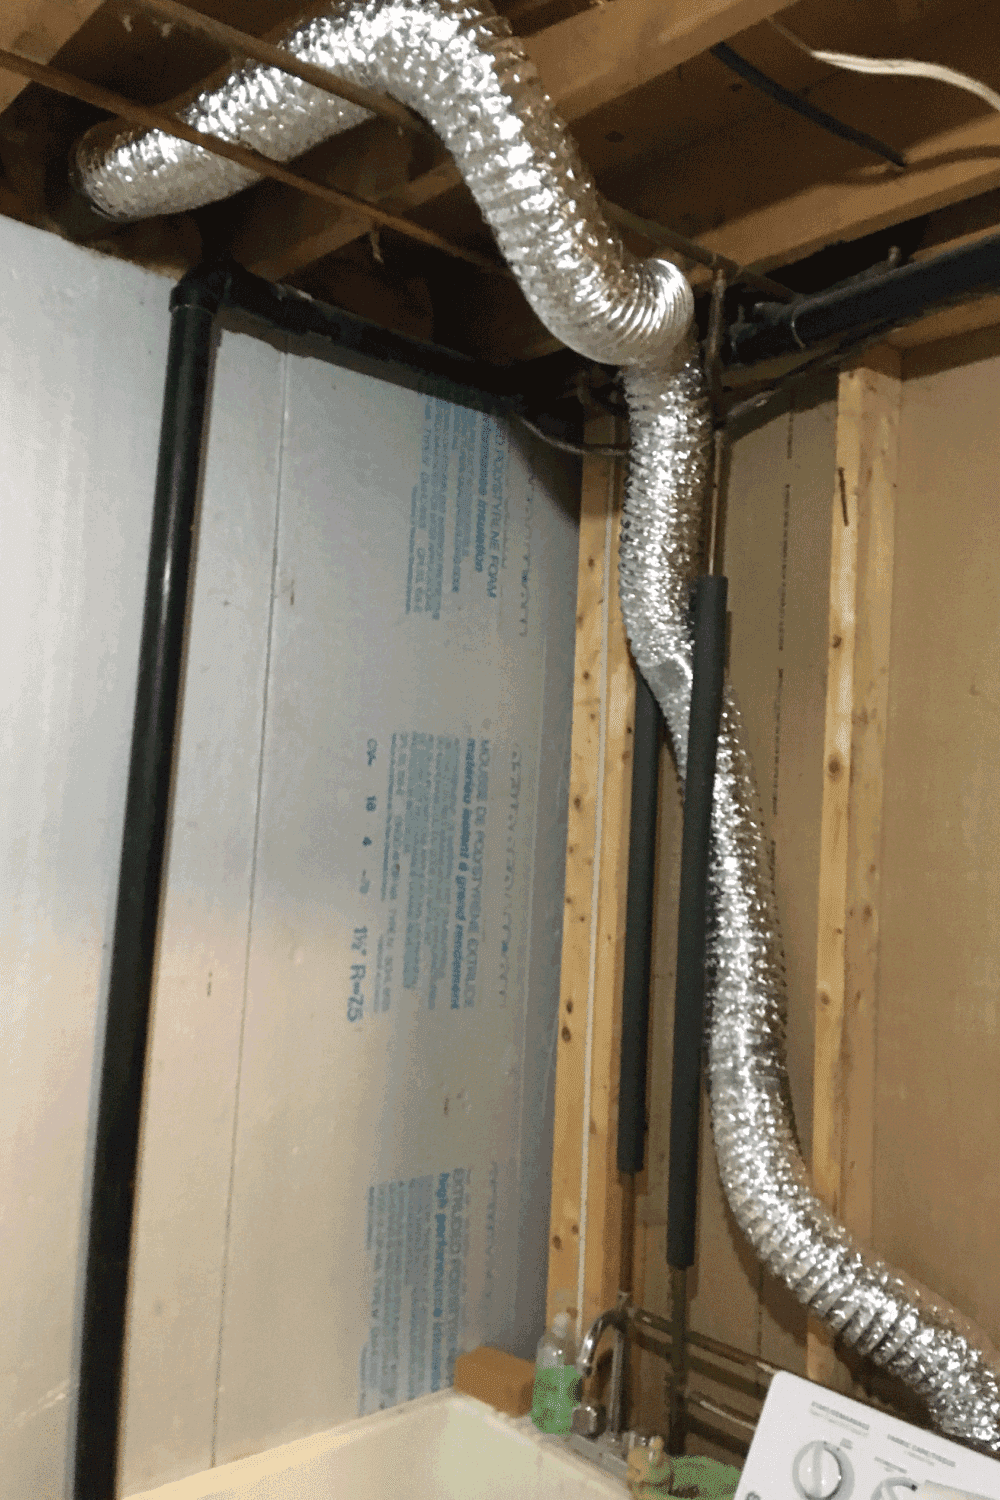 Household dryer ductwork hose repair